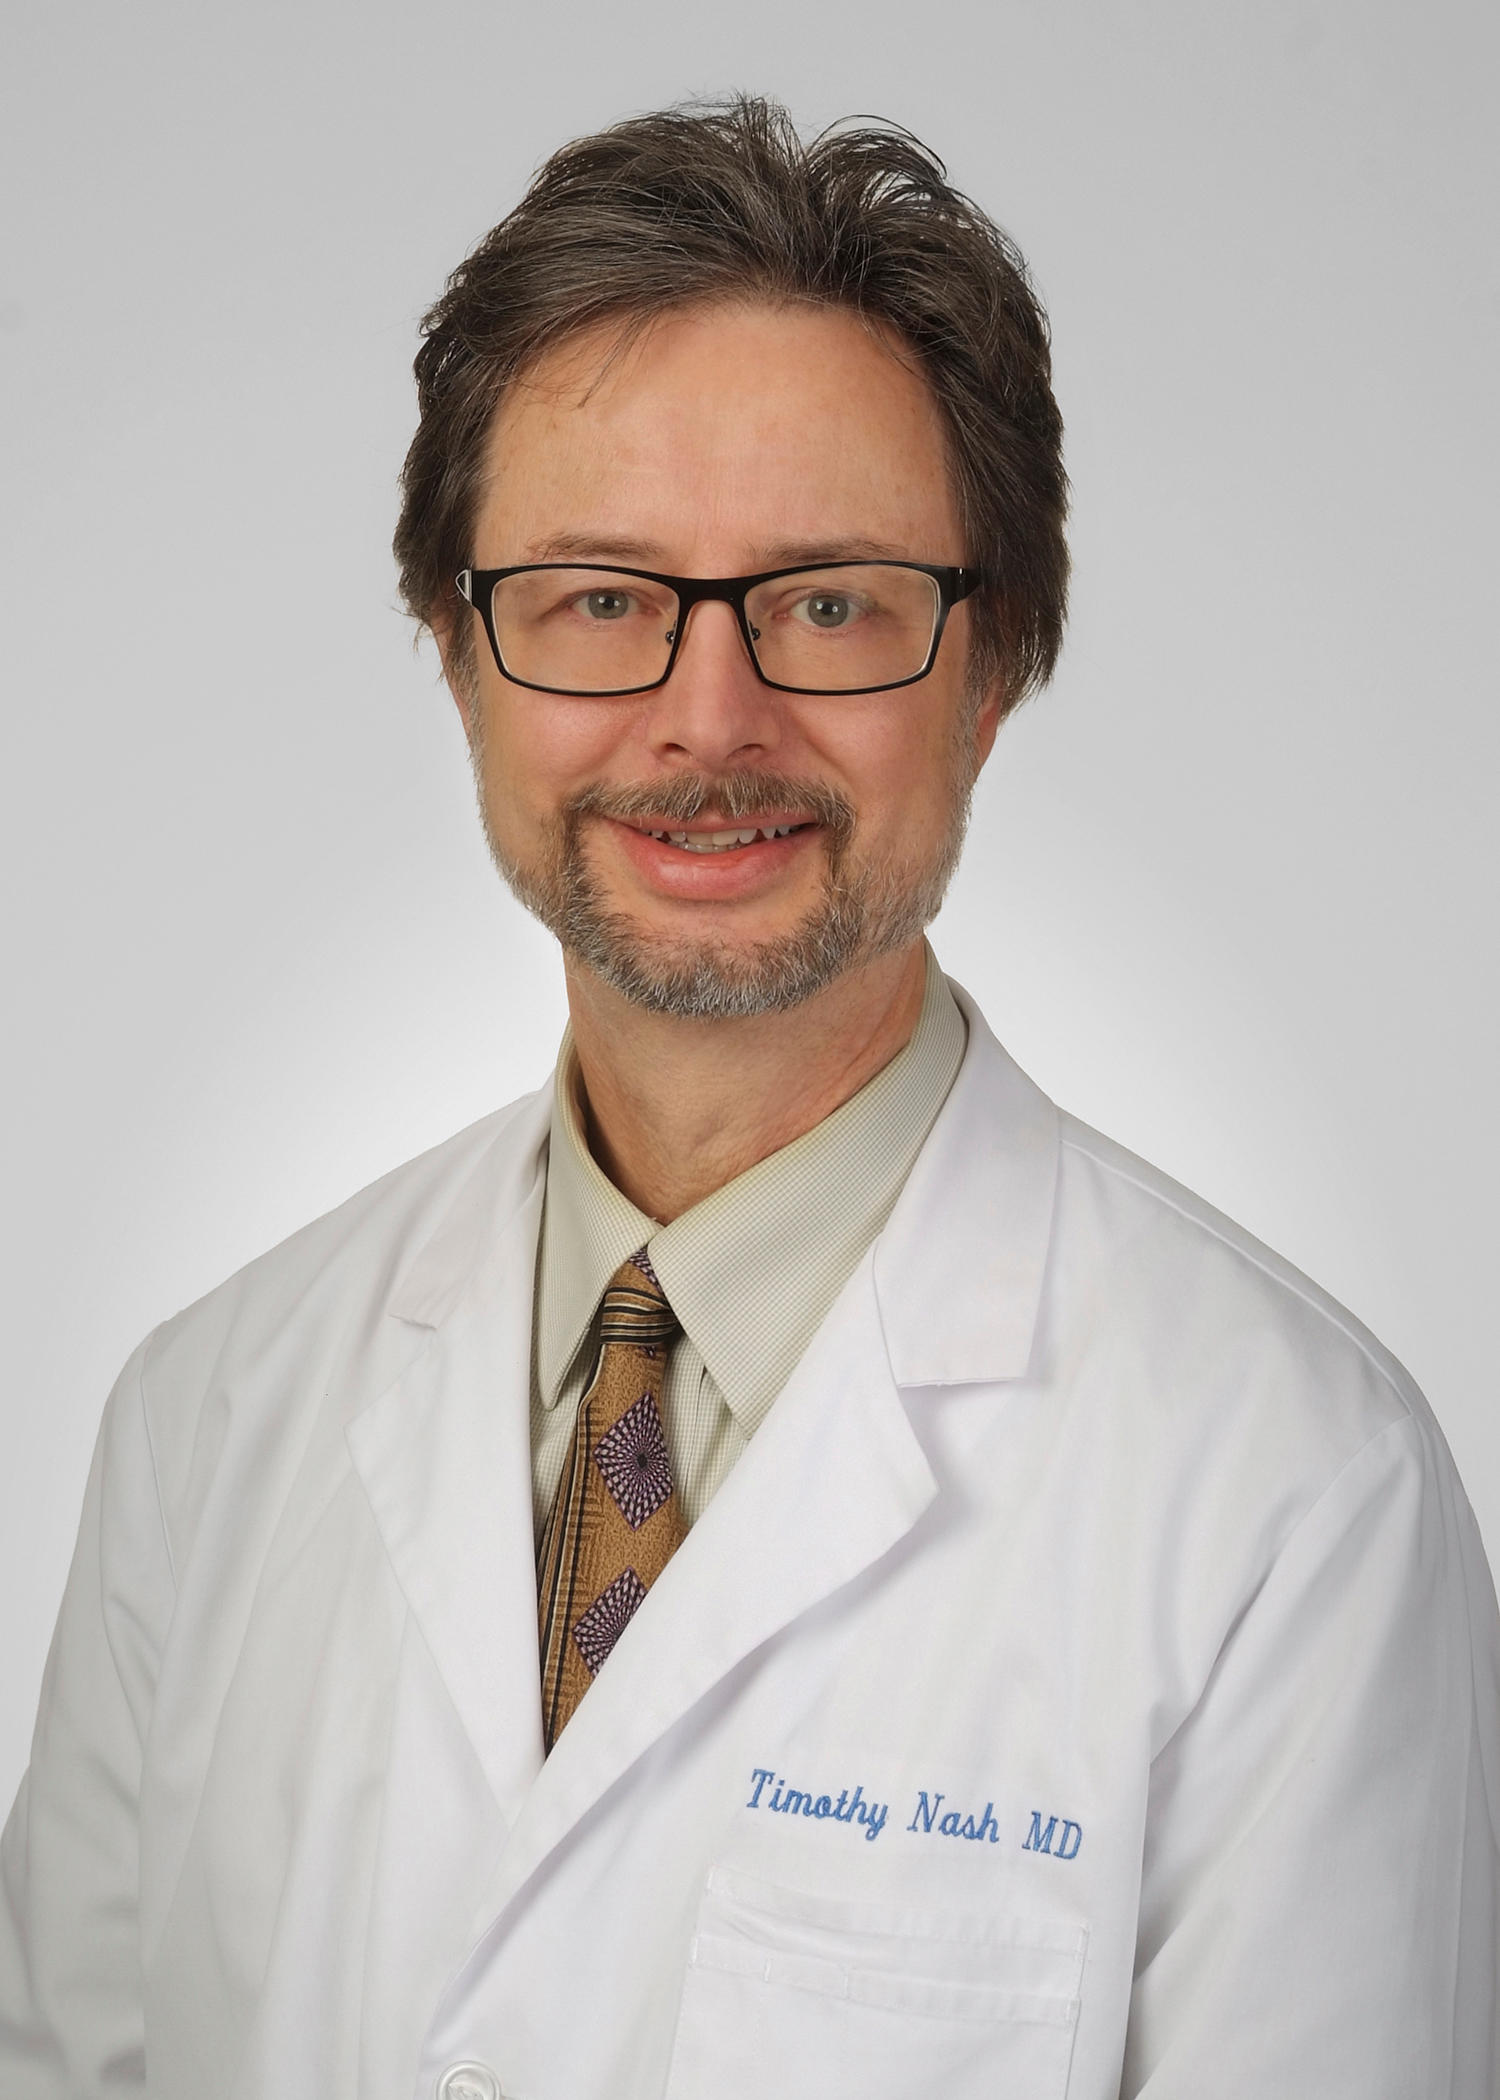 Dr. Timothy Nash, MD